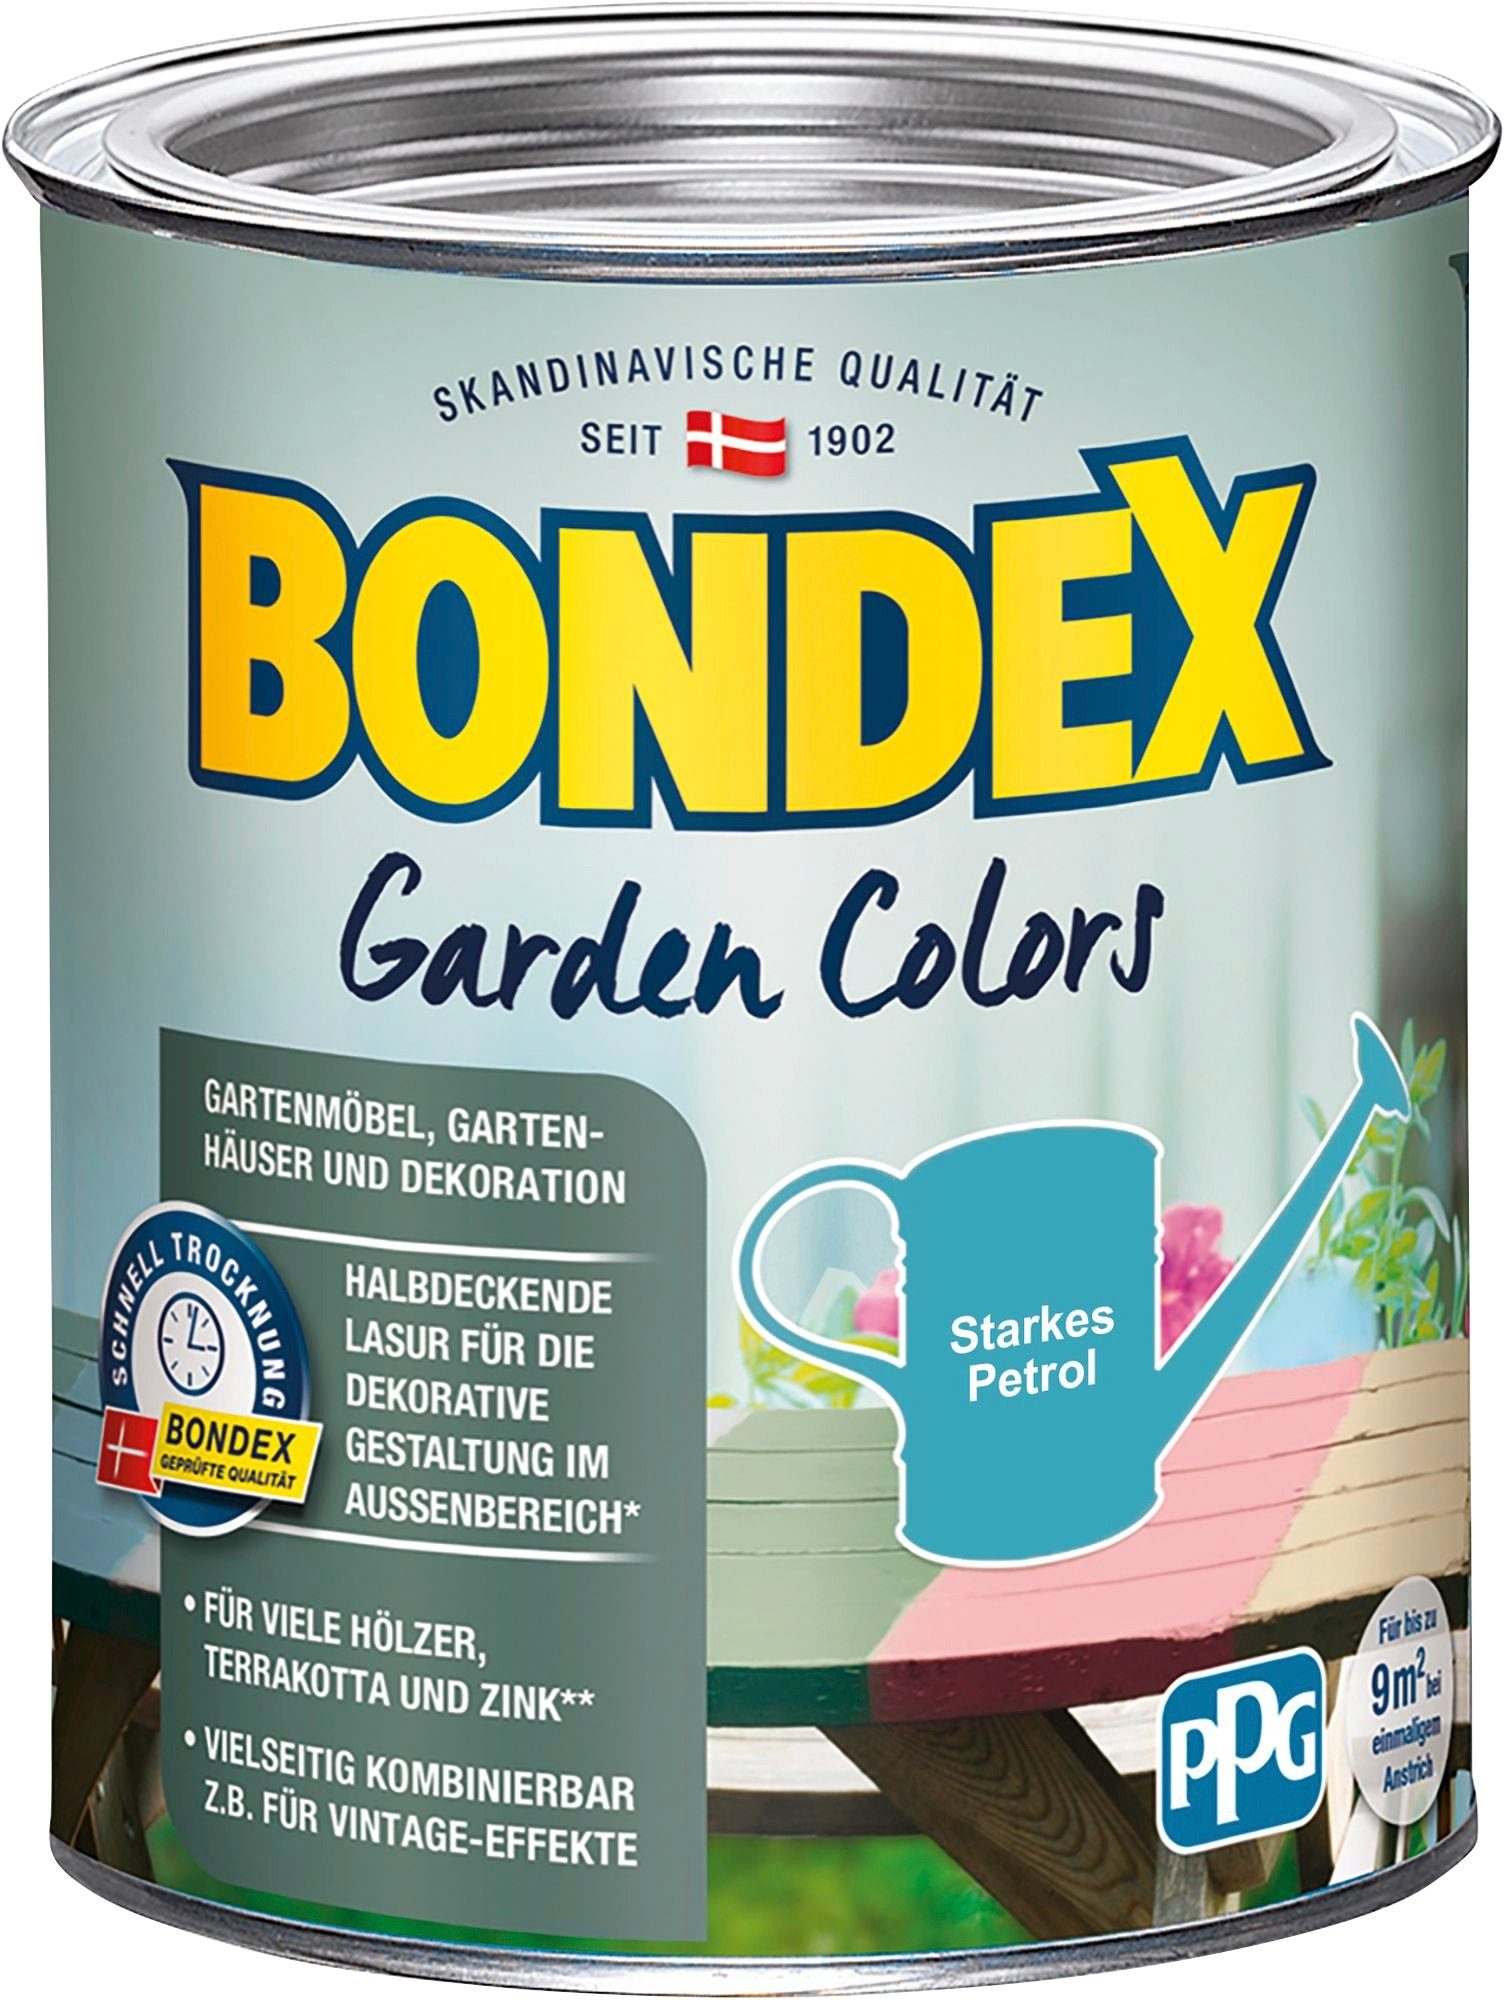 Bondex Wetterschutzfarbe GARDEN COLORS, Behagliches Grün, 0,75 Liter Inhalt Starkes Petrol